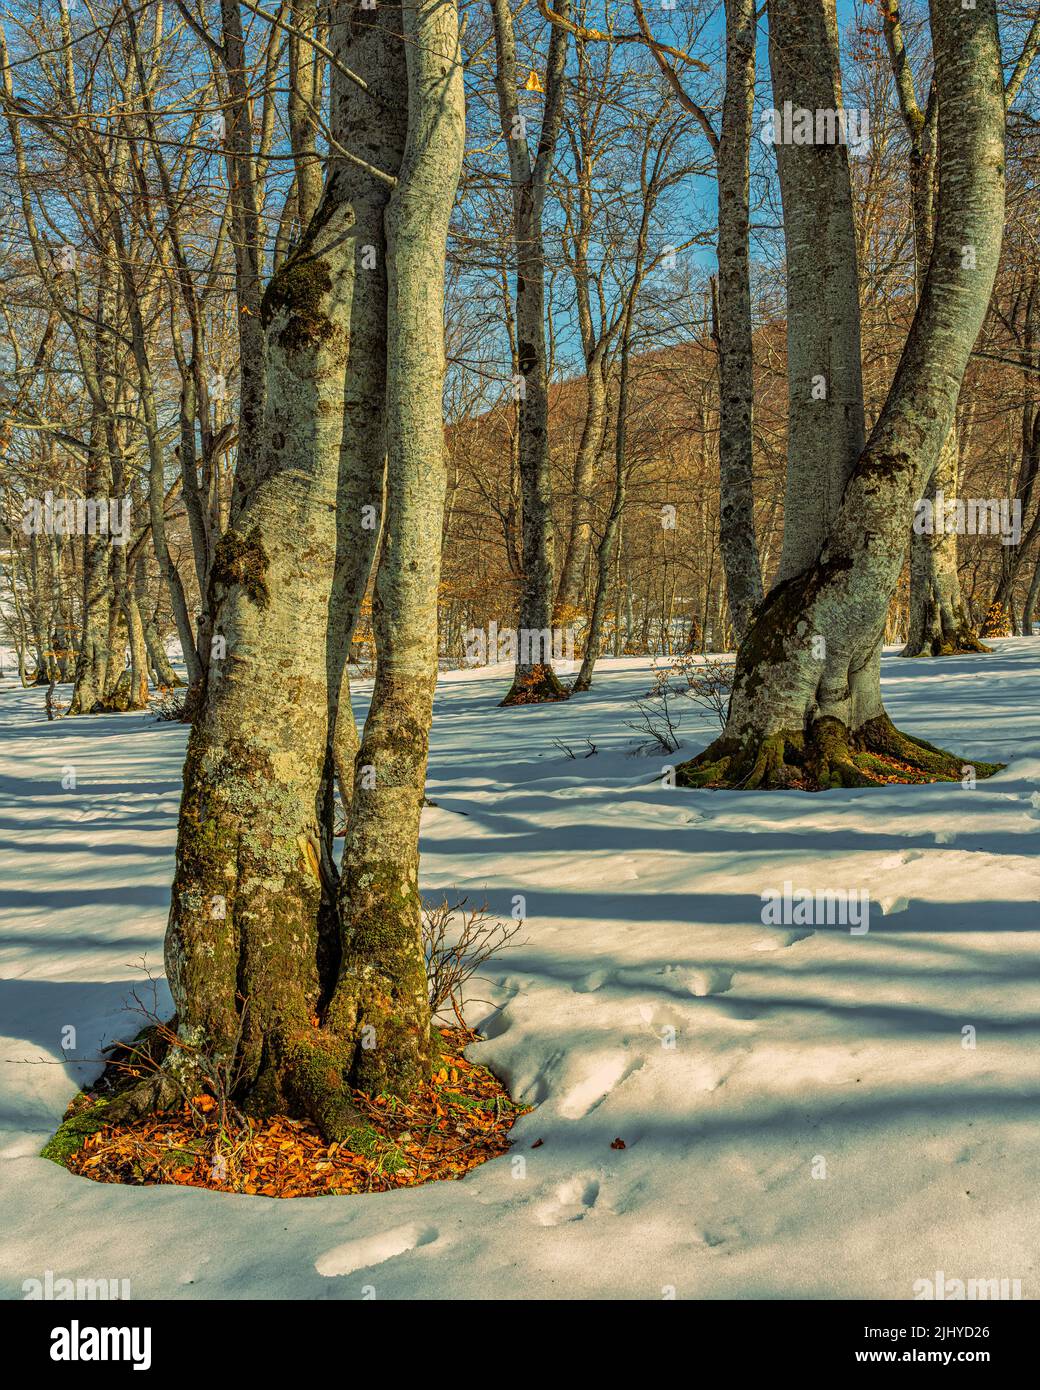 Young beech trees, bare of leaves, in a snowy landscape. Bosco di Sant'Antonio Nature Reserve, Pescocostanzo, province of L'Aquila, Abruzzo, Italy Stock Photo